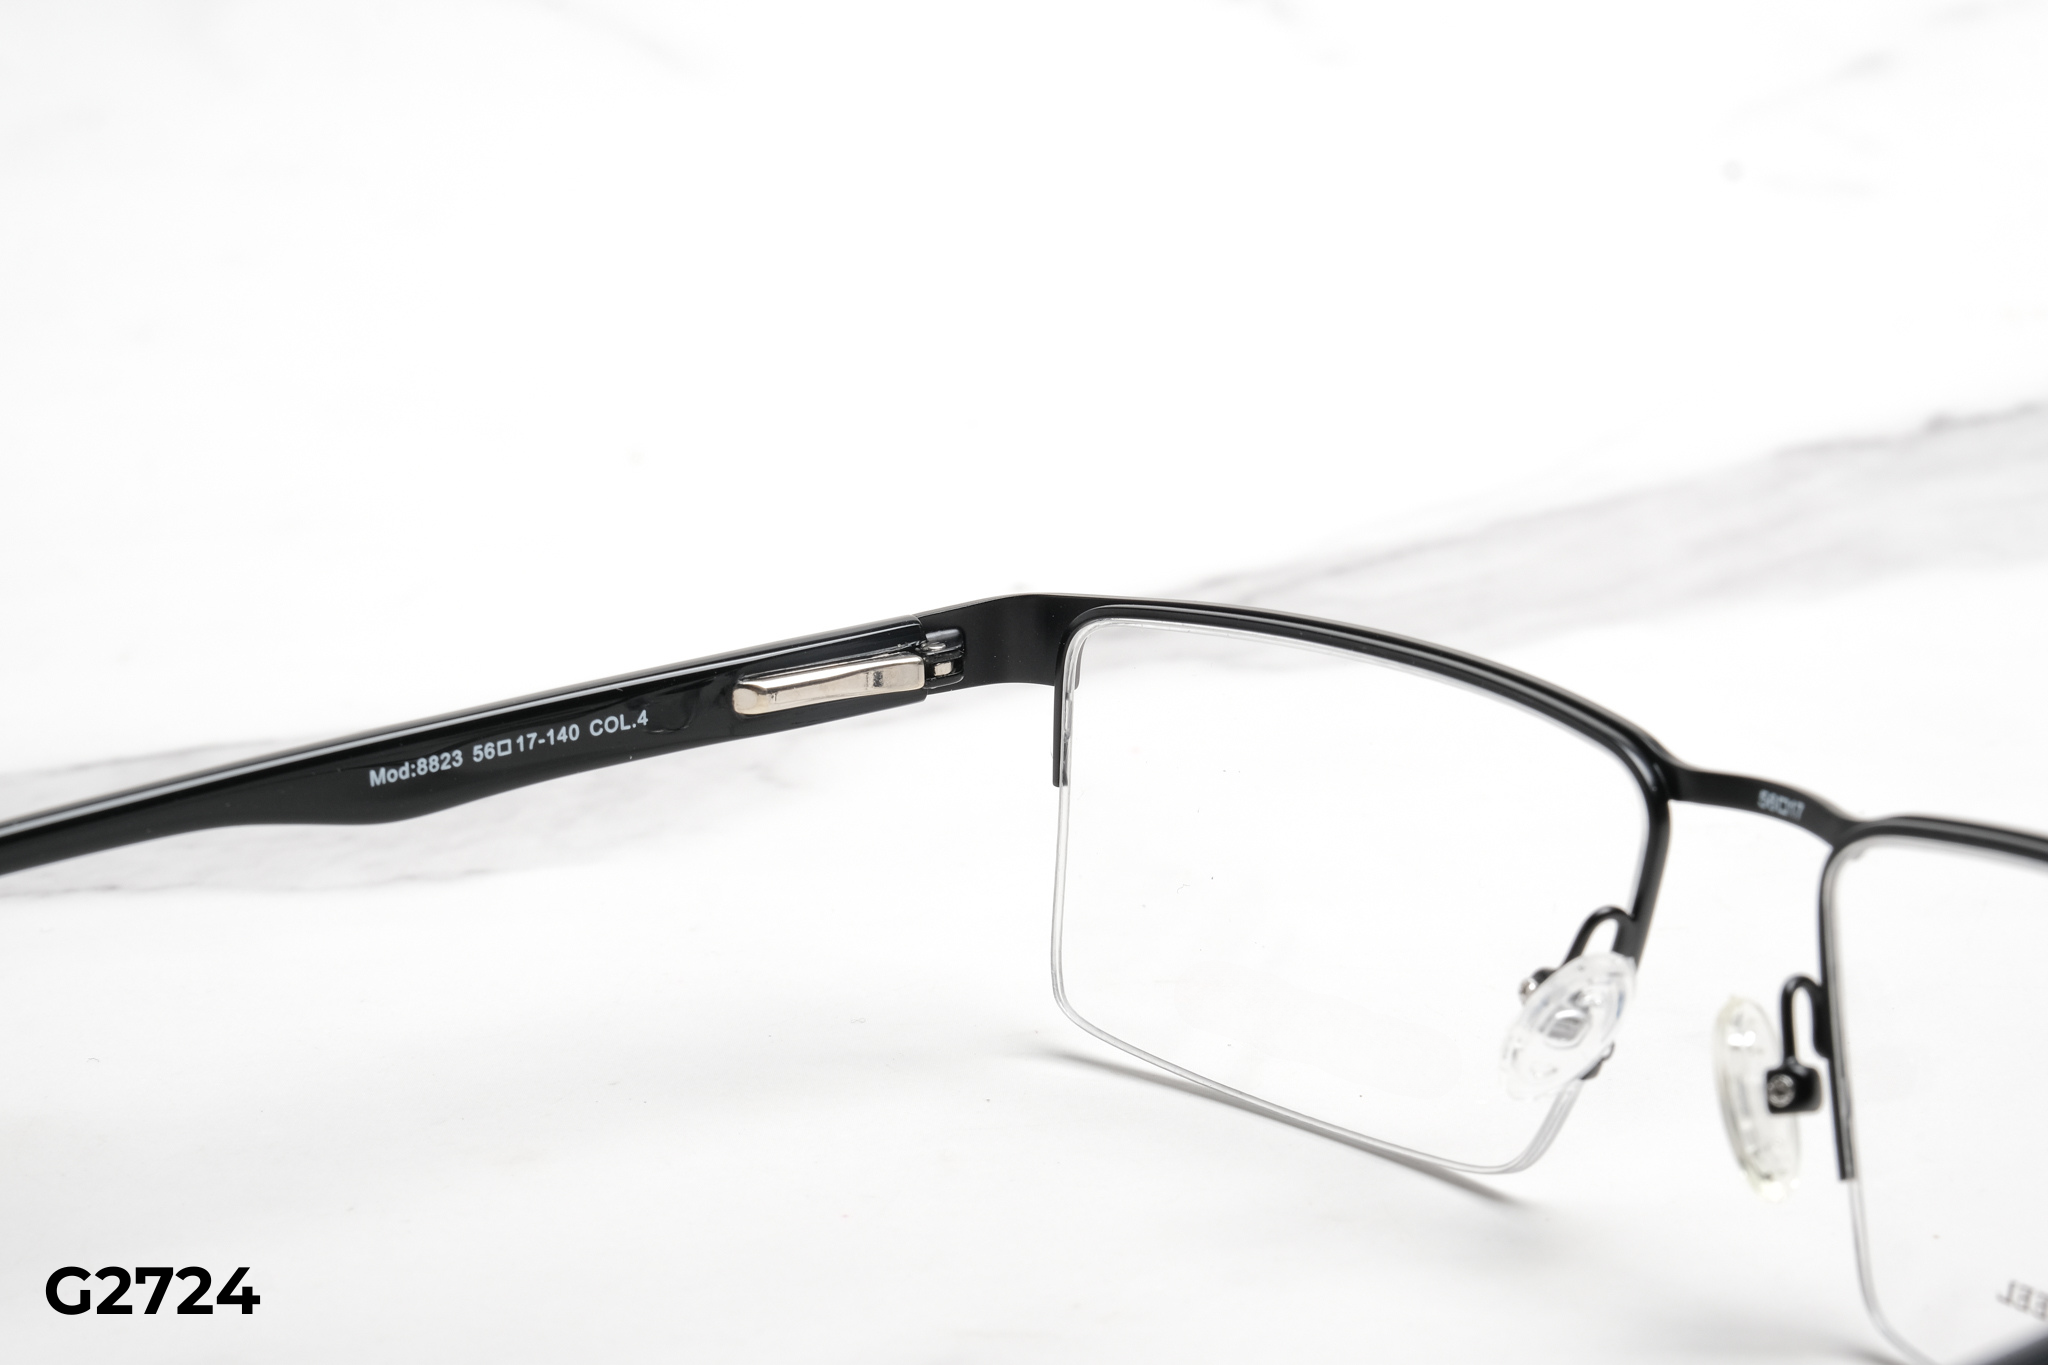  Rex-ton Eyewear - Glasses - G2724 